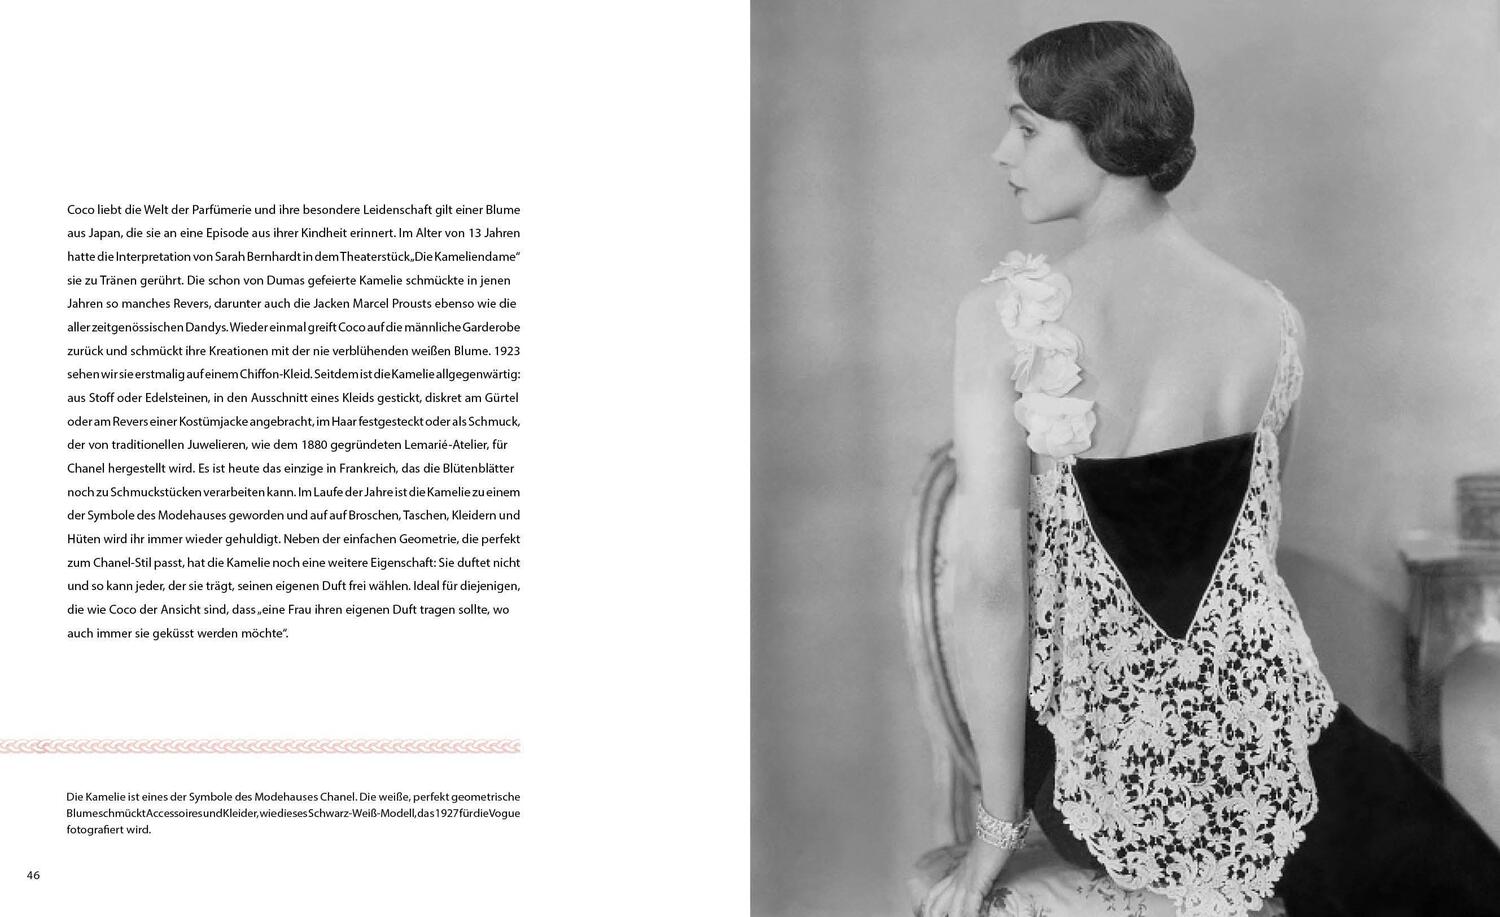 Bild: 9788863124514 | Coco Chanel | Eine Ikone der Mode | Chiara Pasqualetti Johnson | Buch